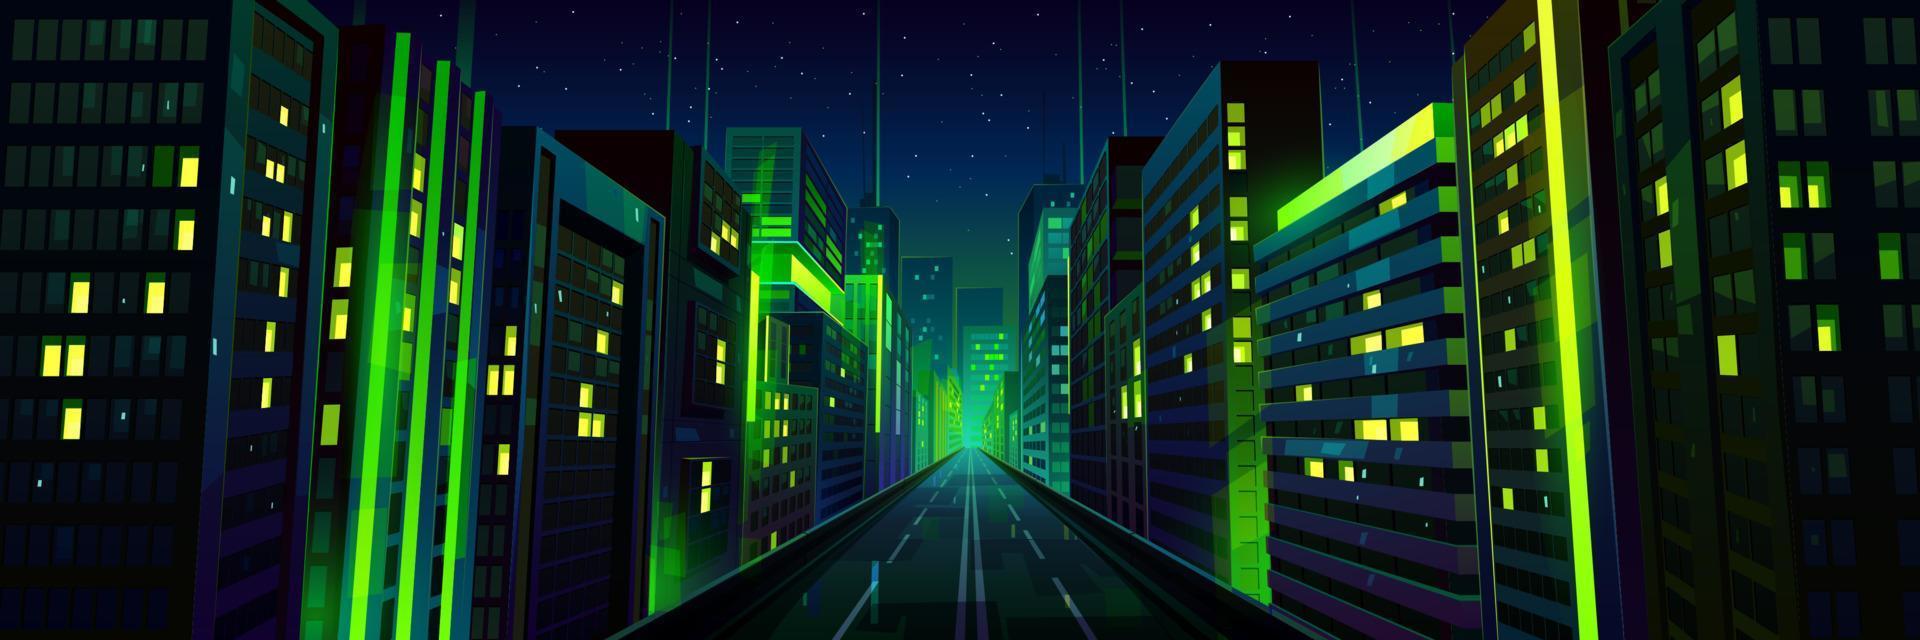 notte città strada con strada e verde neon splendore vettore